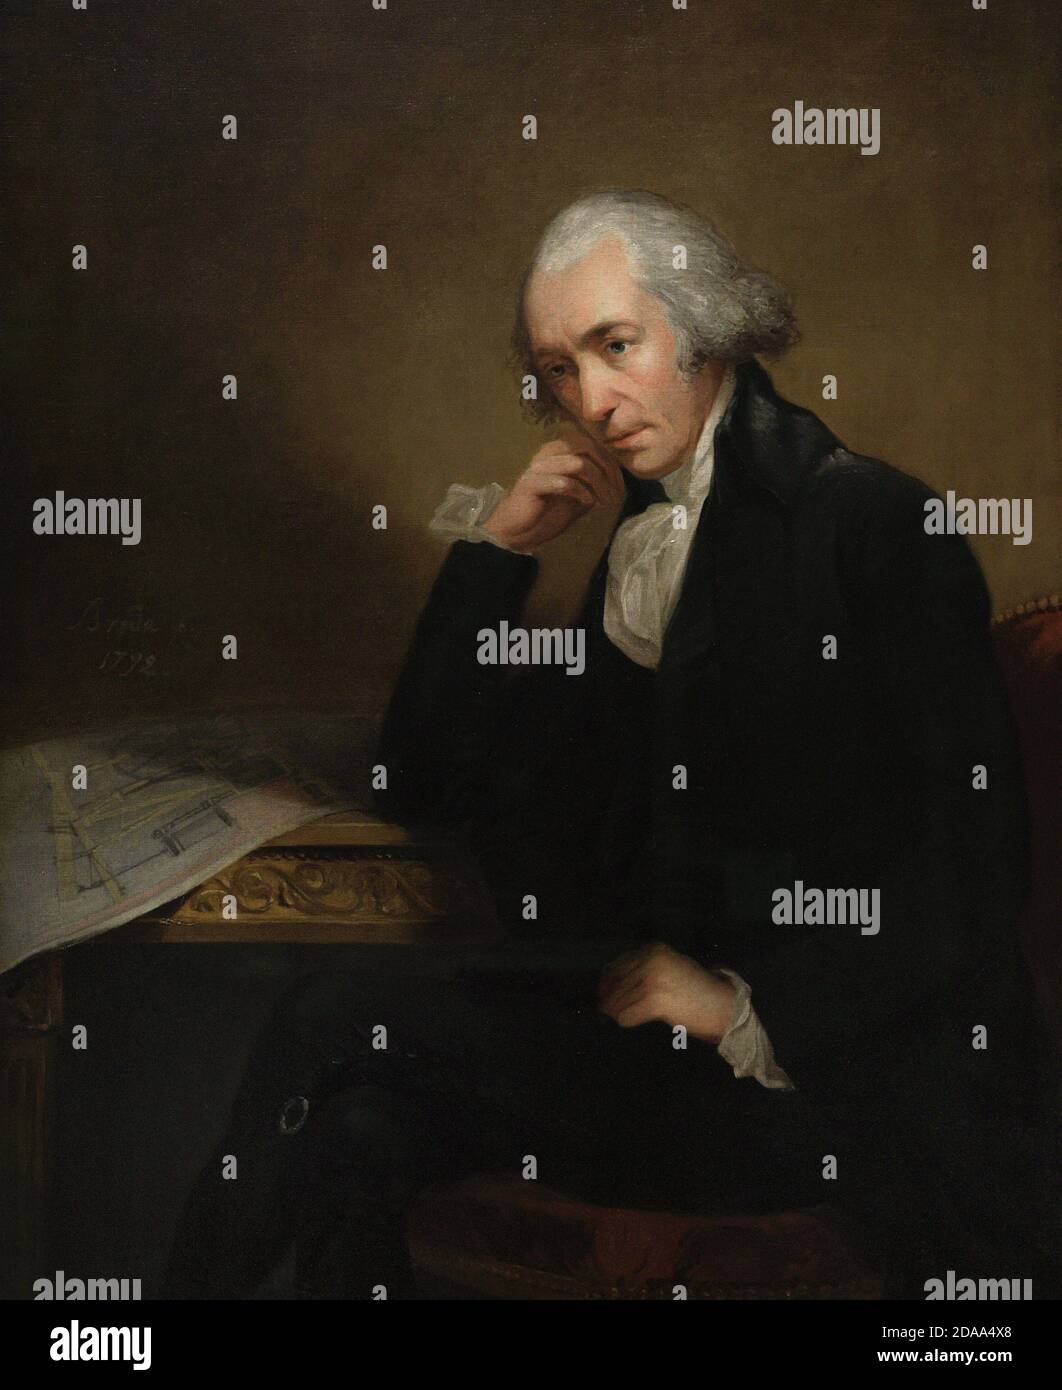 James Watt (1736-1819). Schottischer Erfinder und Maschinenbauingenieur. Potrait von Carl Fredrik von Breda (1759-1818). Watt wird mit den Plänen für seinen Kondensator dargestellt. Öl auf Leinwand (125,7 x 100,3 cm), 1792. National Portrait Gallery. London, England, Vereinigtes Königreich. Stockfoto